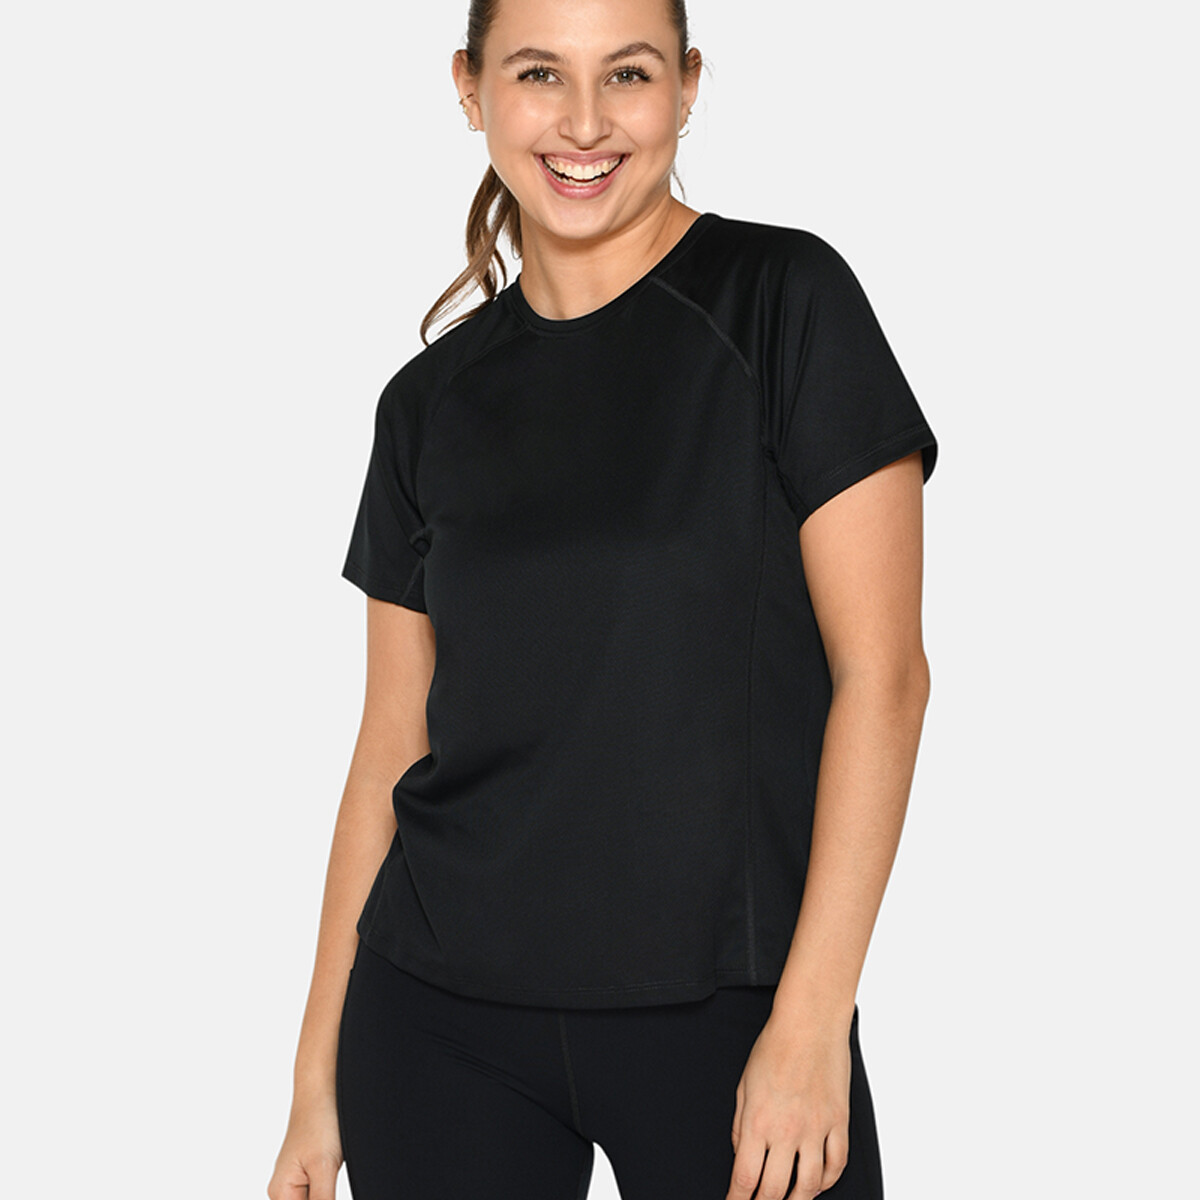 Se Zebdia Women Sports T-shirt, Farve: Sort, Størrelse: XS, Dame hos Netlingeri.dk